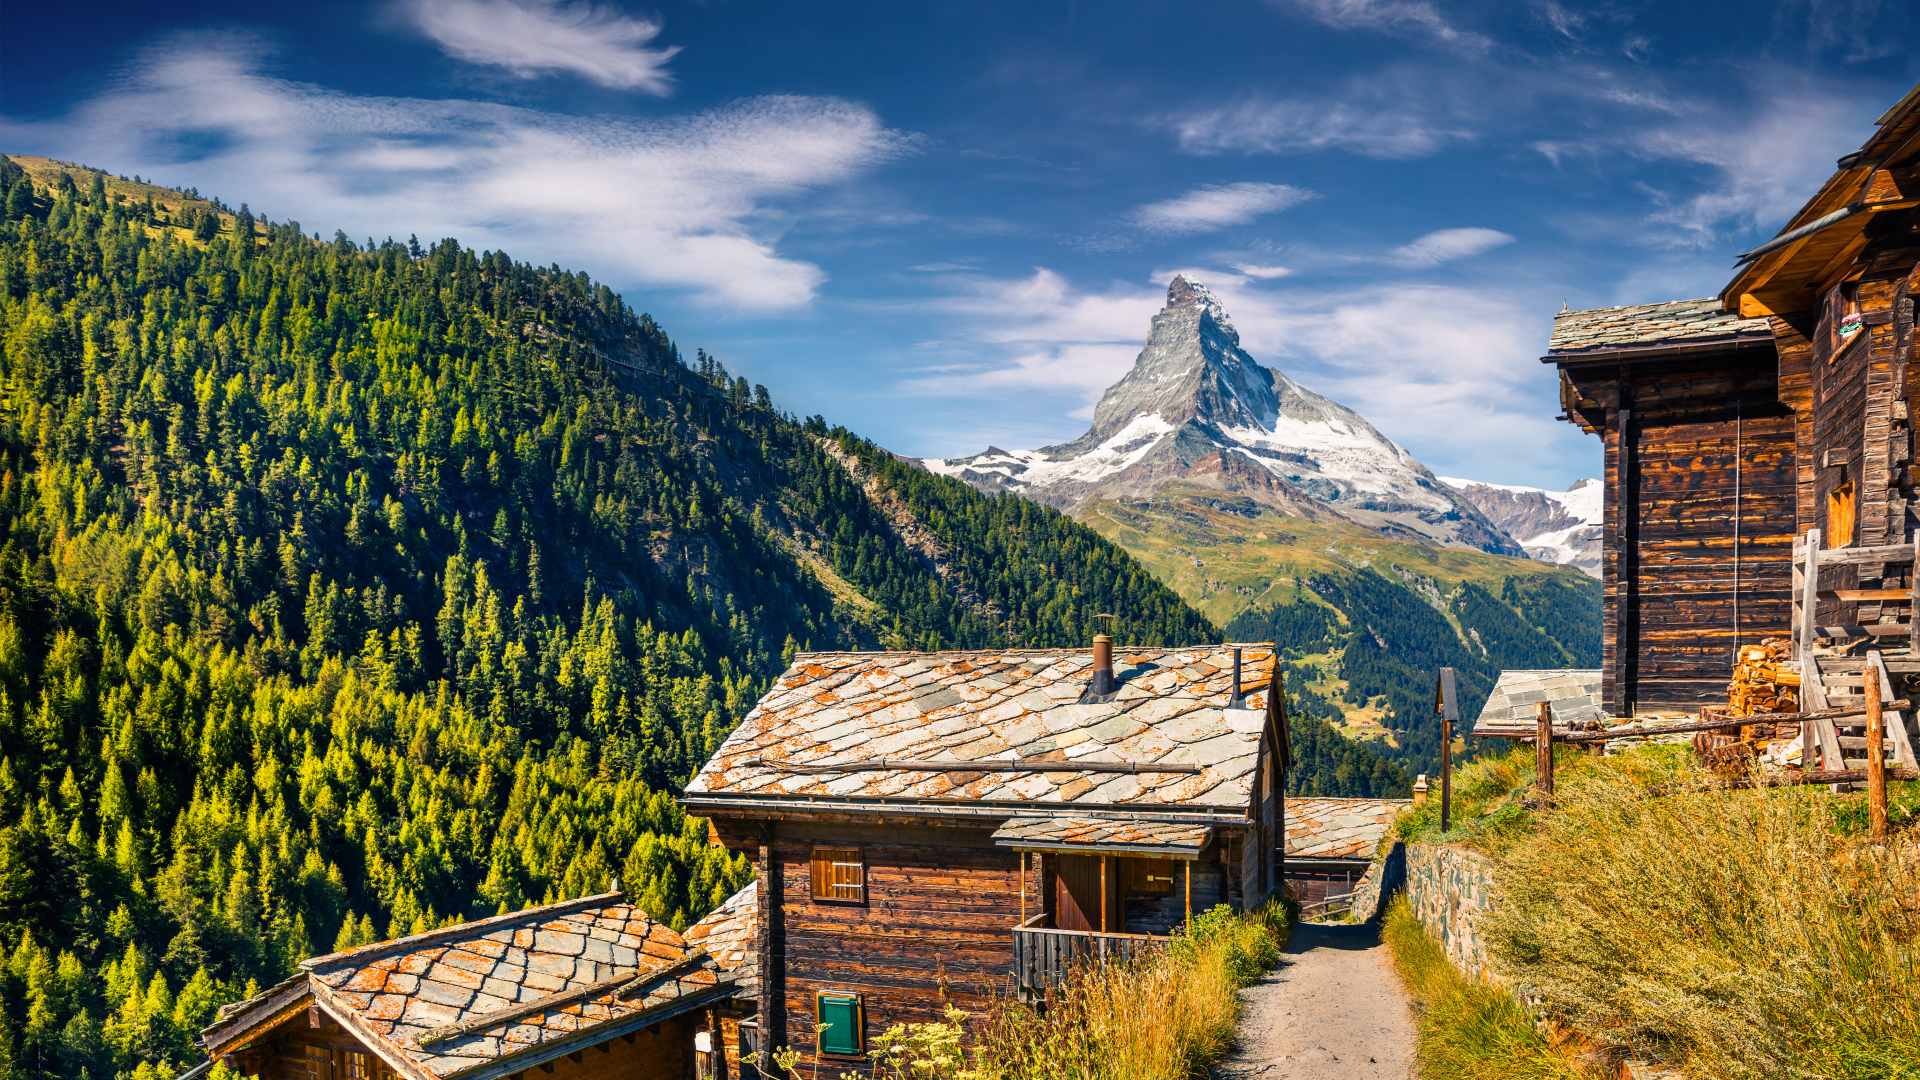 Alpine village with the Matterhorn in the background, Switzerland